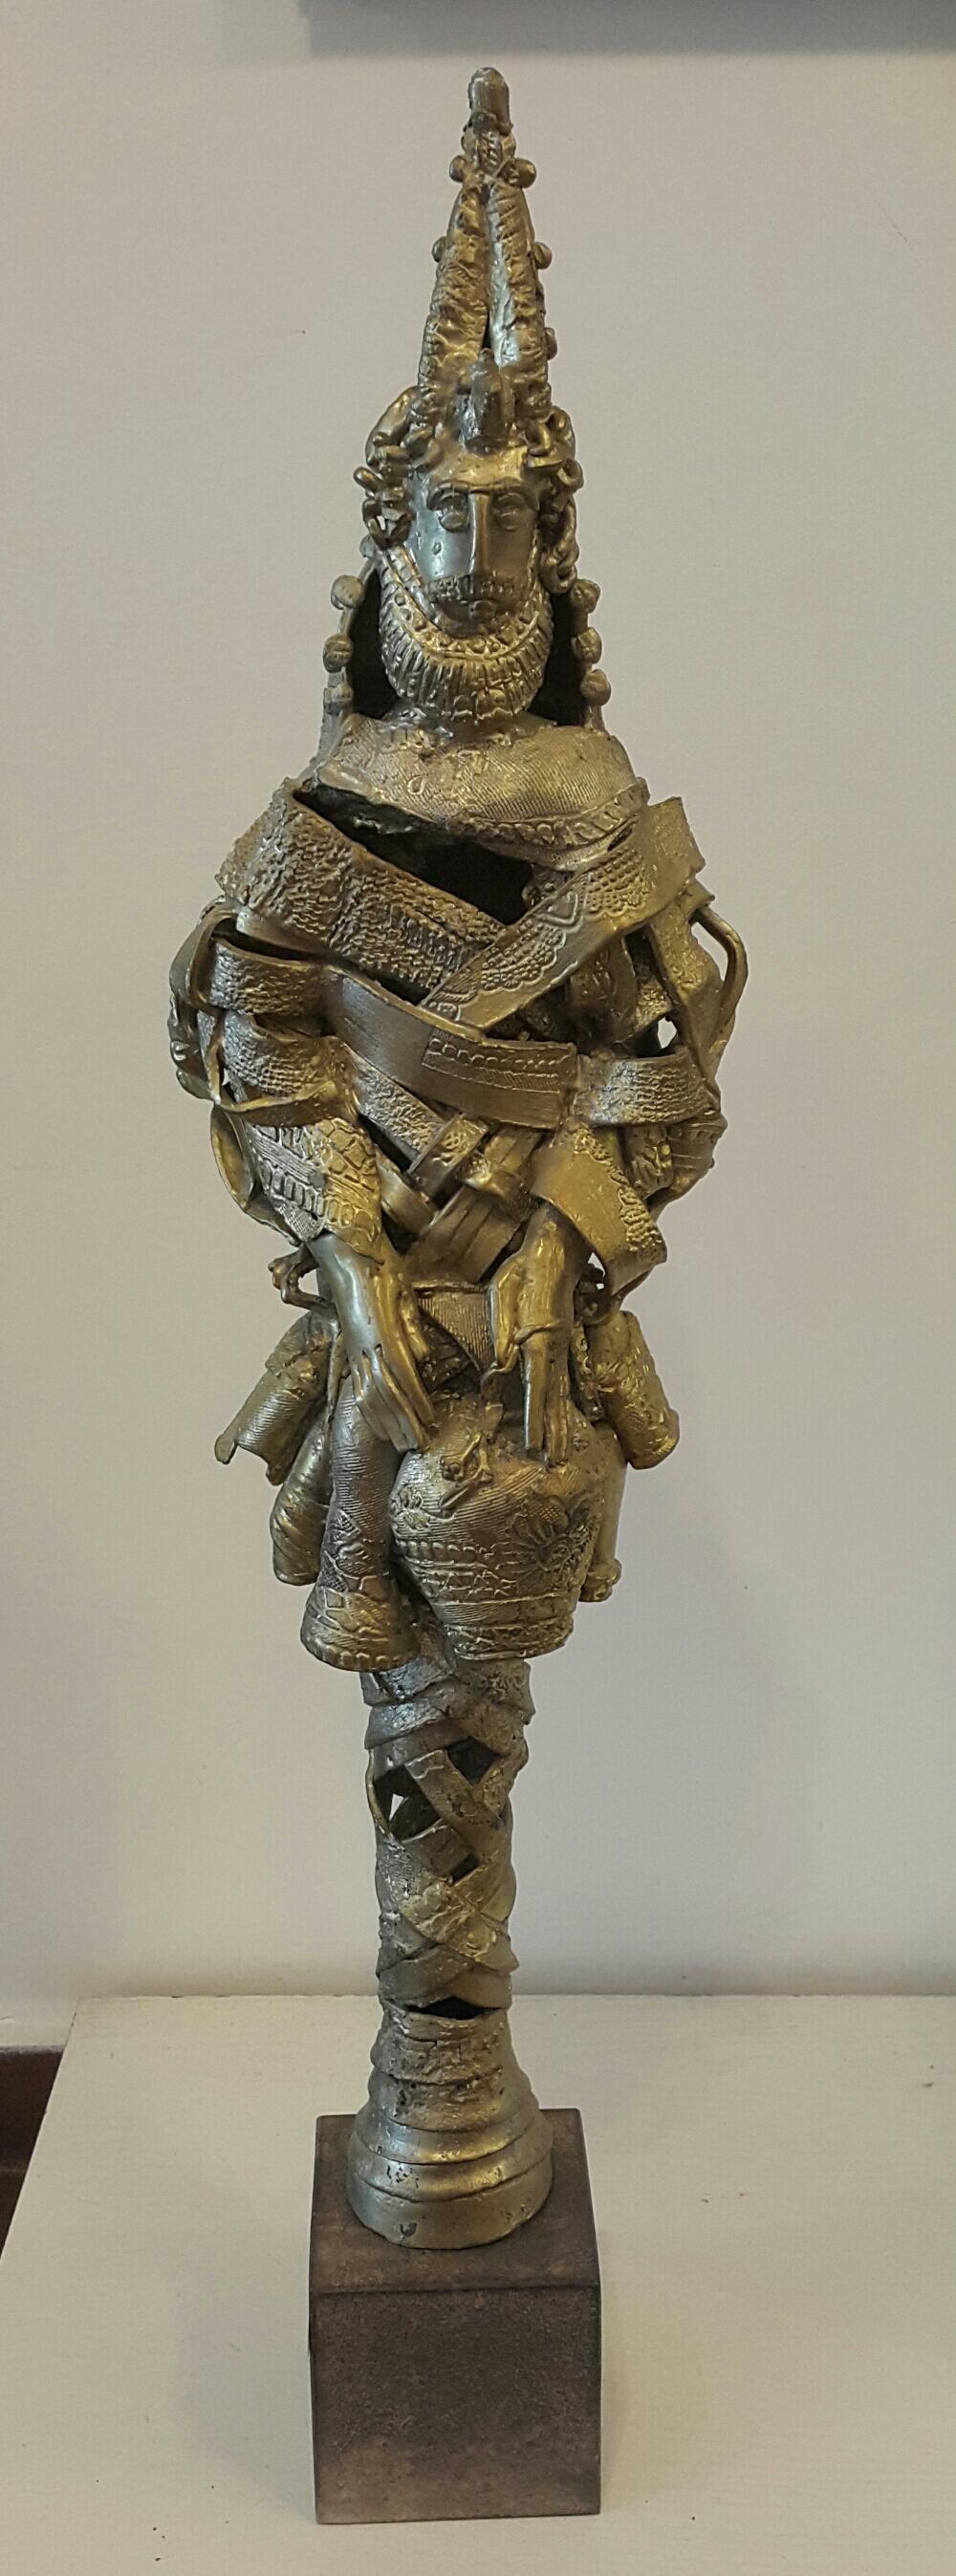 Big Kuker - Sculpture by Roumyana Roussinowa